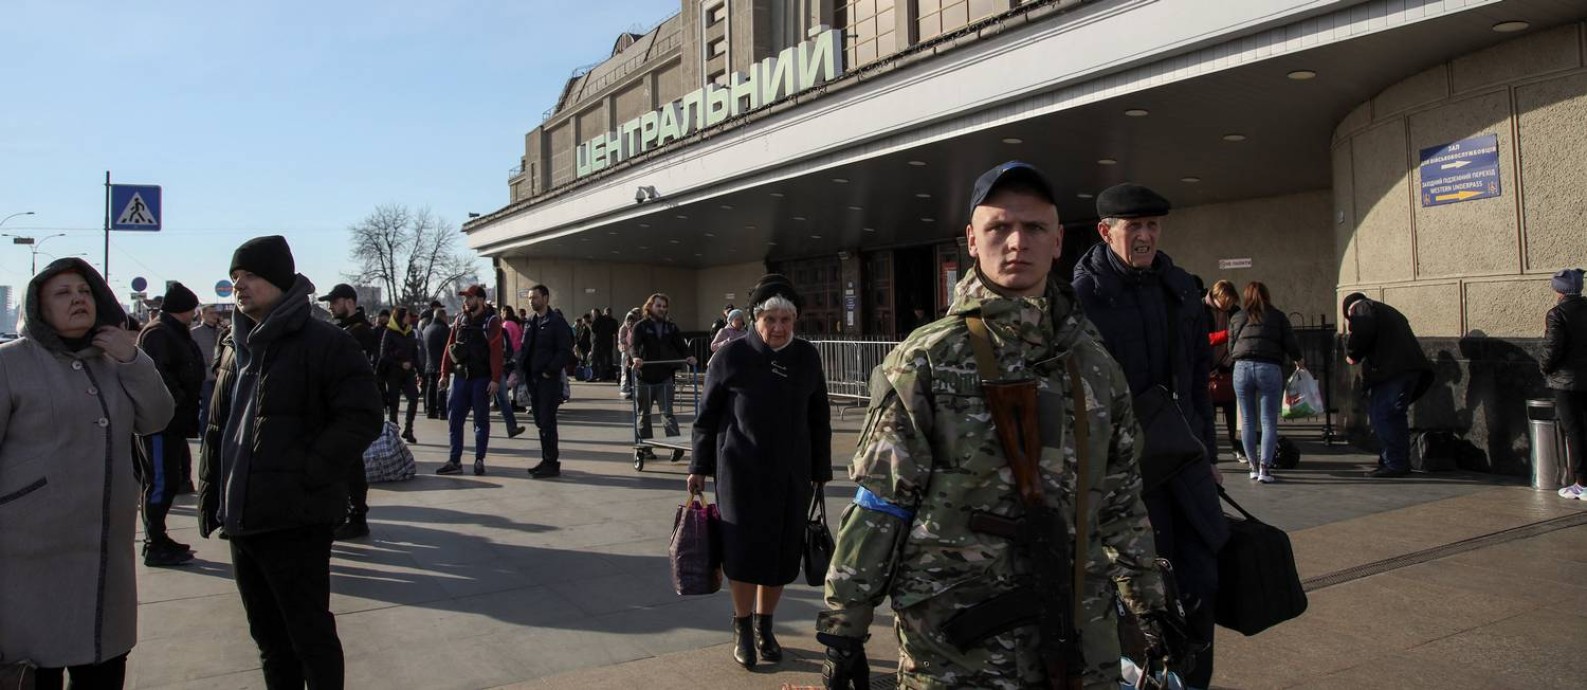 Saindo da estação de trem, pessoas retornam a Kiev após tropas russas se retirarem da região Foto: Joseph Campbell / Reuters